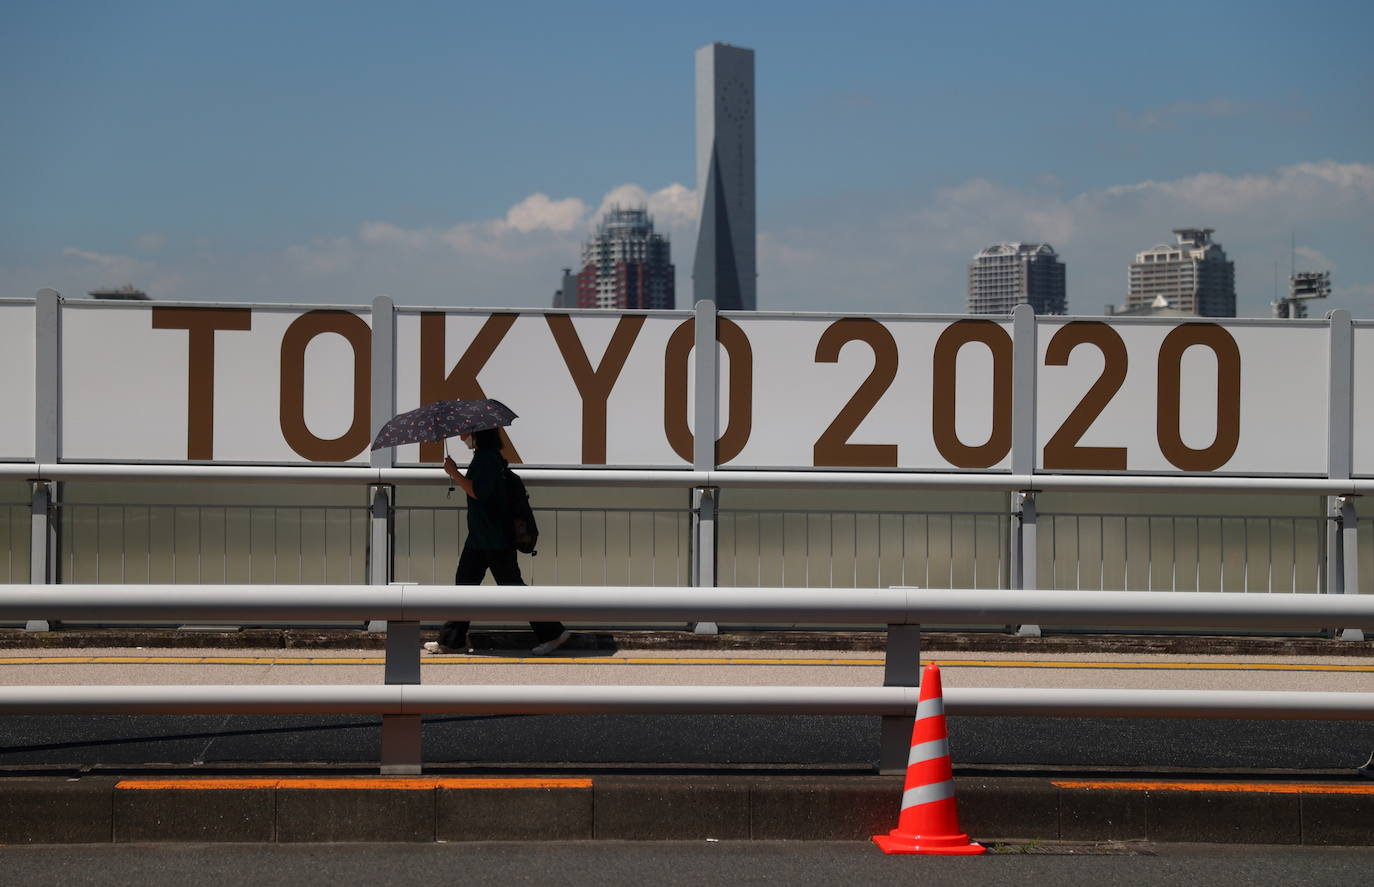 La ciudad está engalanado con carteles de la cita olímpica que comenzará en tres días.